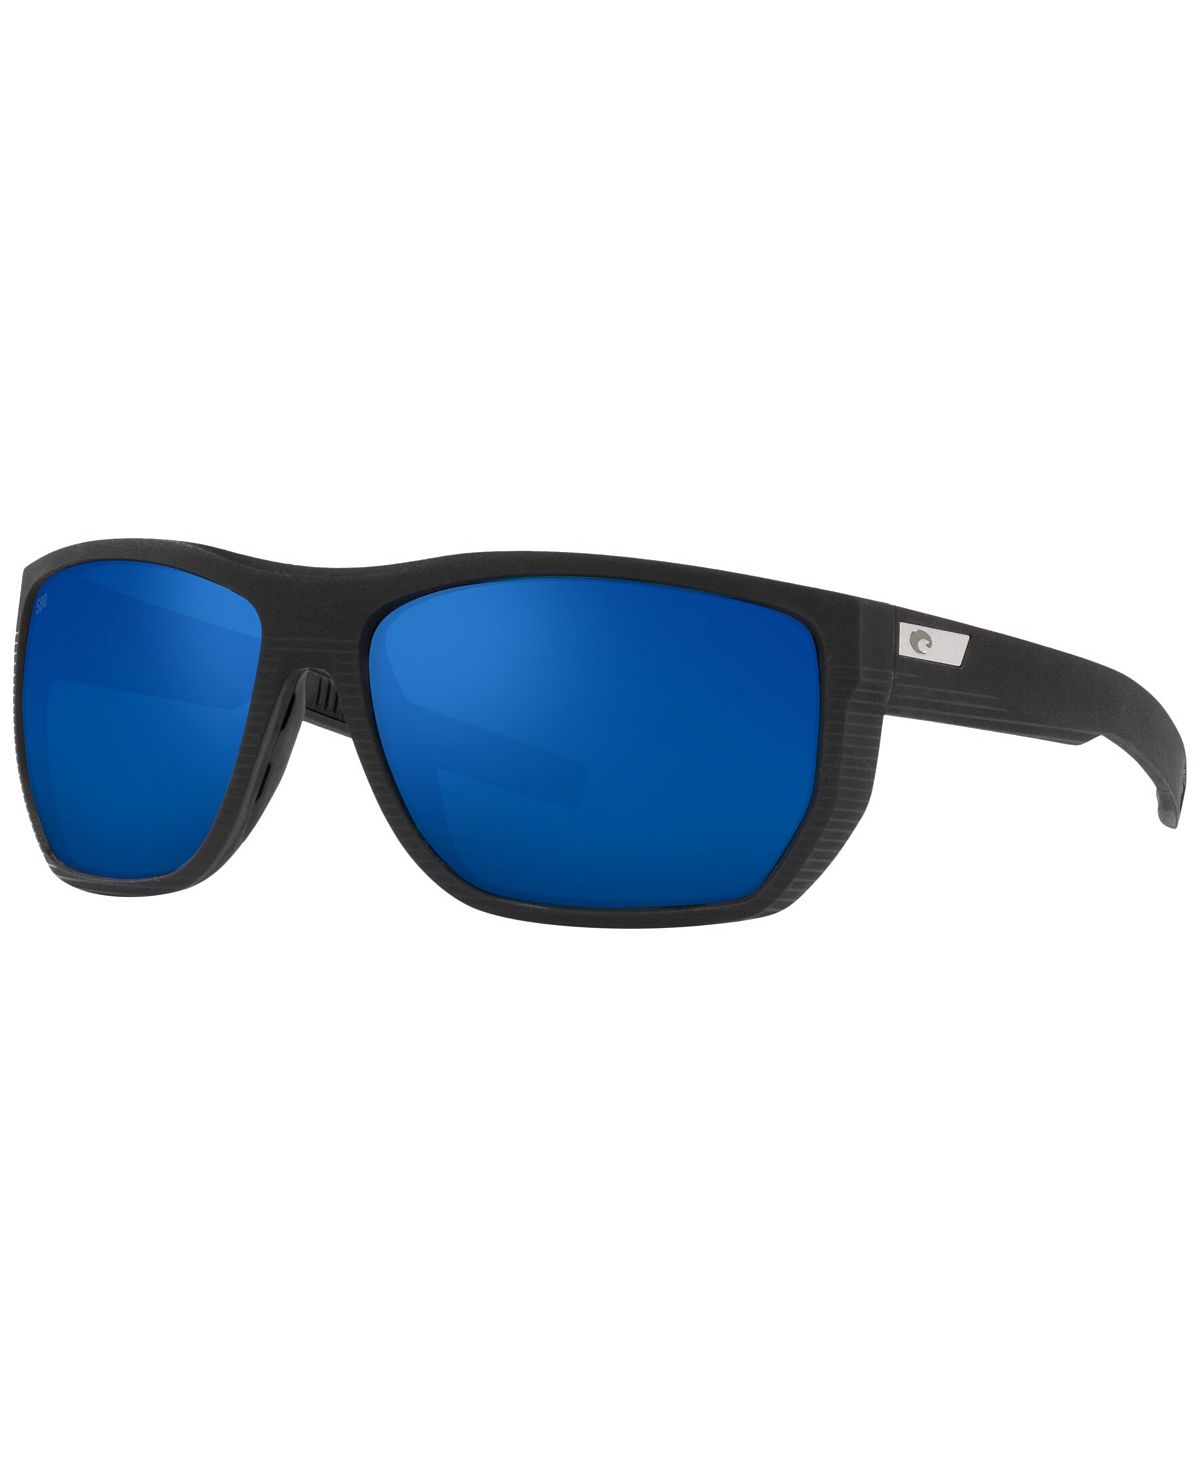 Мужские поляризованные солнцезащитные очки, 06S9085 Santiago 63 Costa Del Mar цена и фото